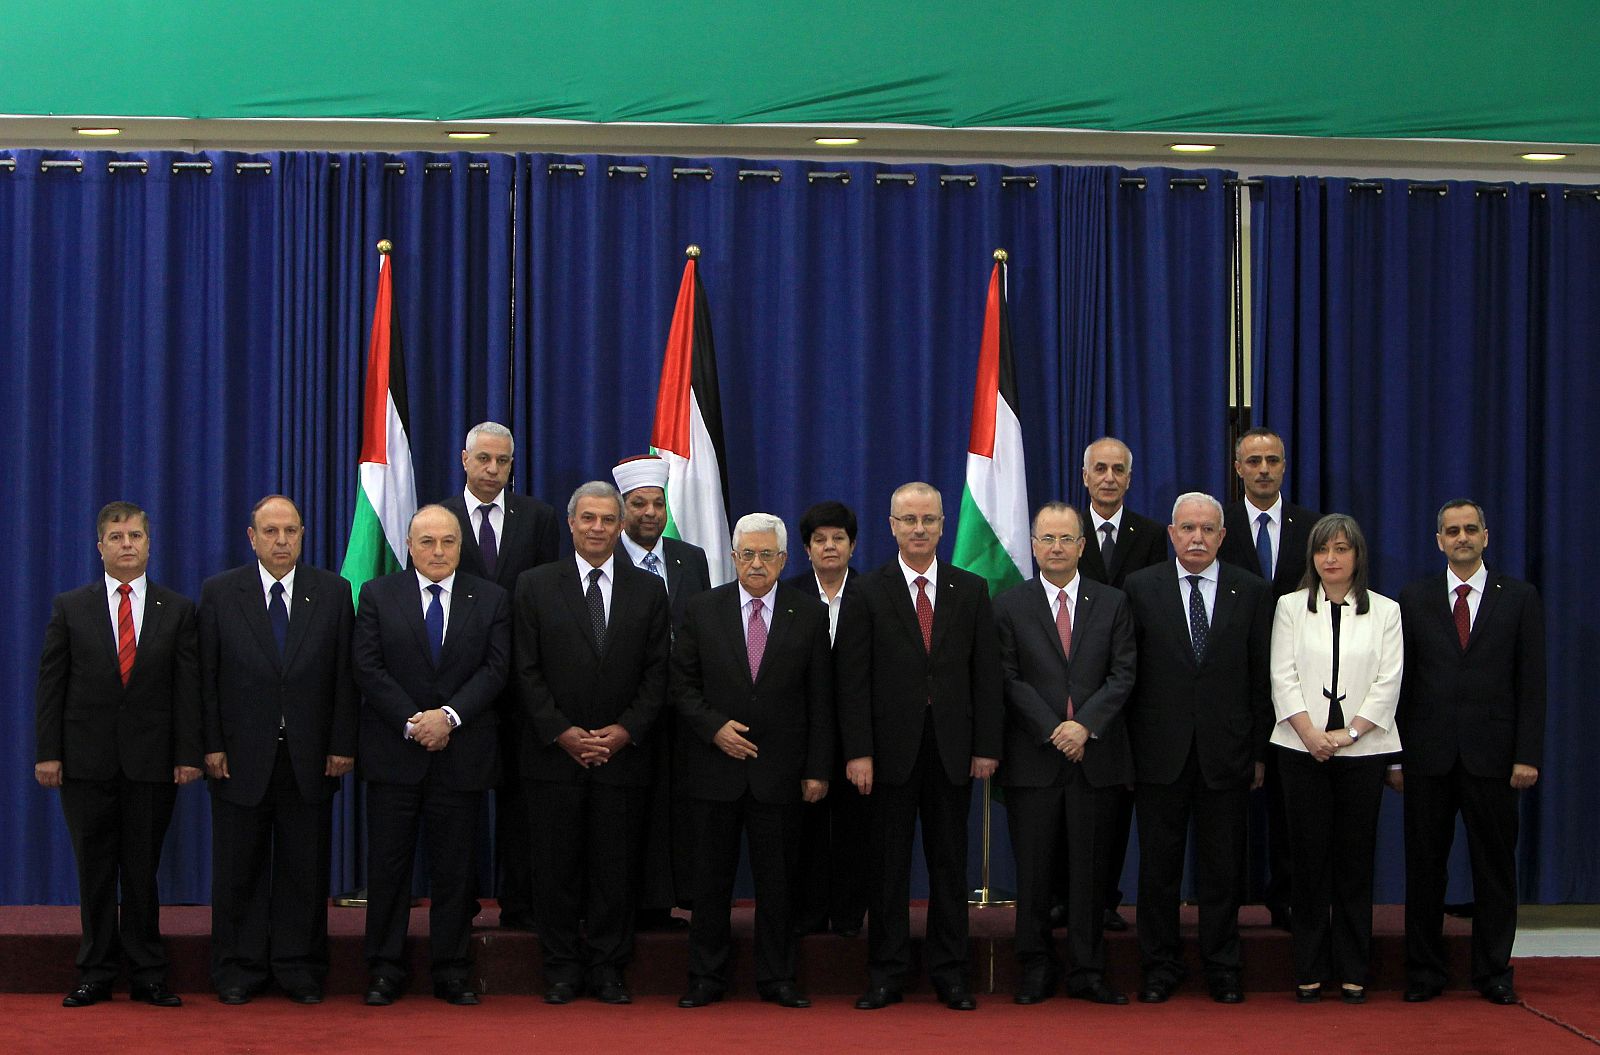 El presidente palestino Abas posa con el nuevo gobierno palestino de concentración.